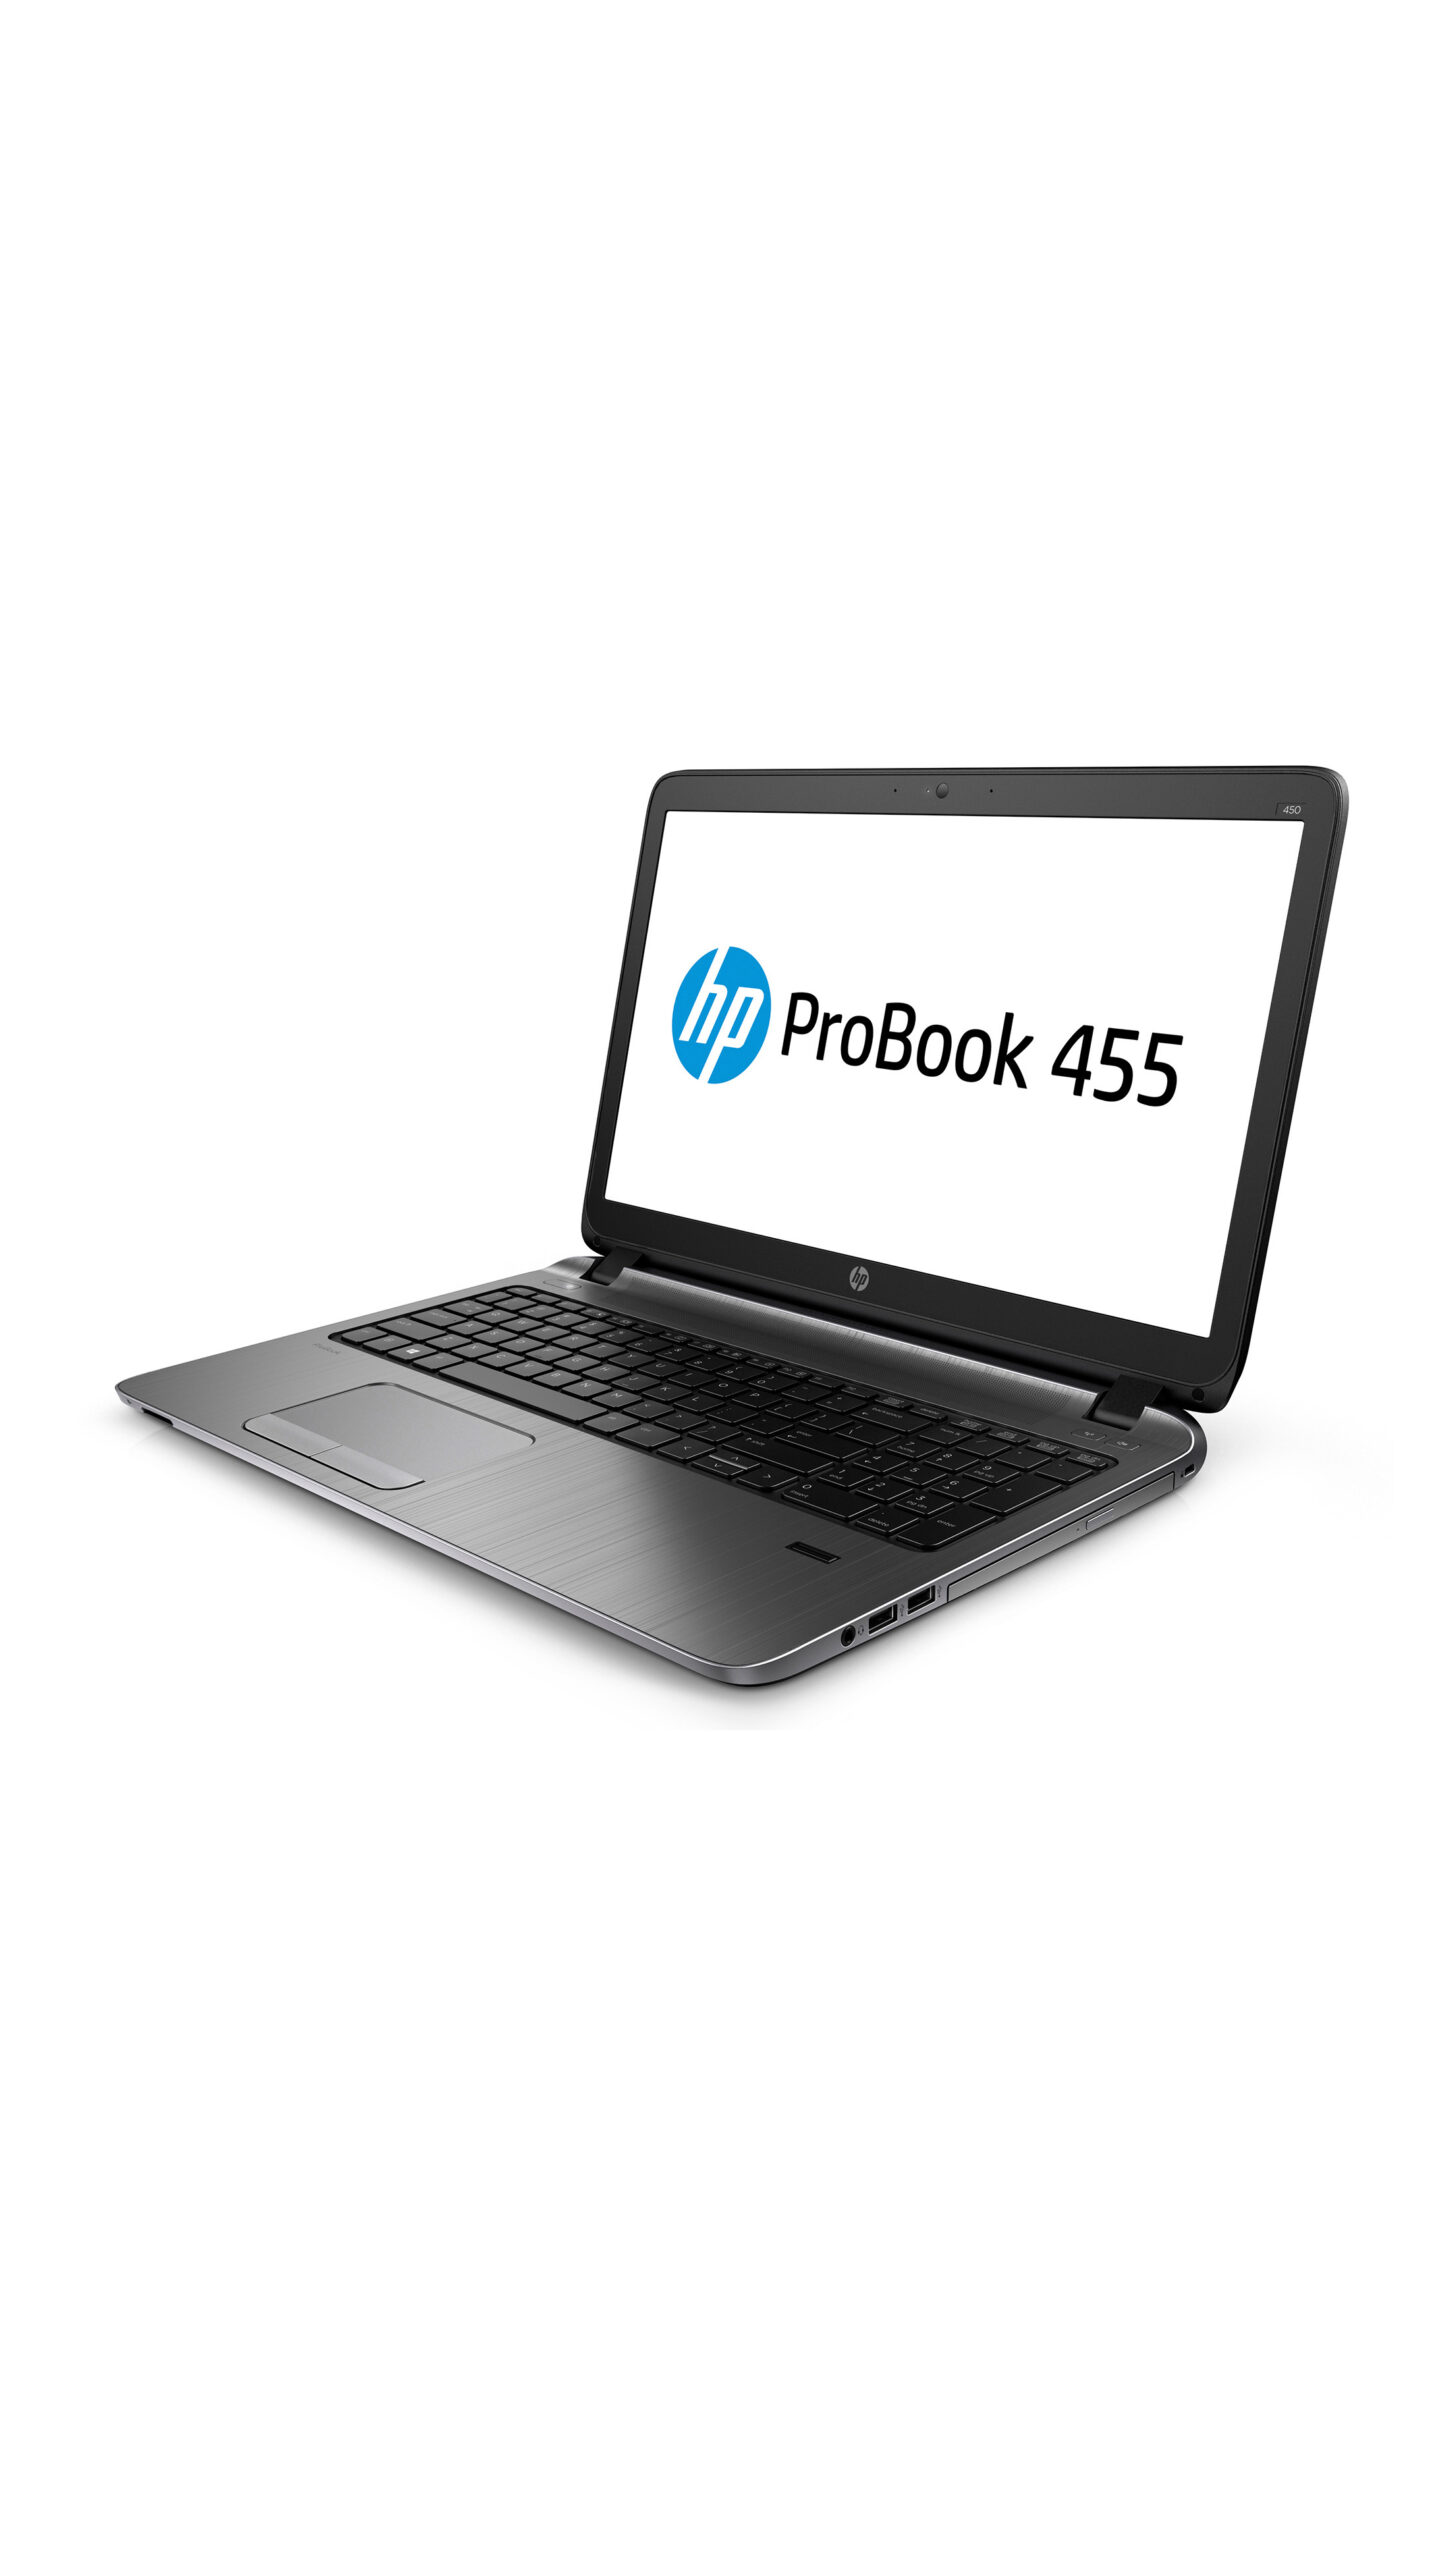 Обзор HP Probook 455 G2 Ubuntu